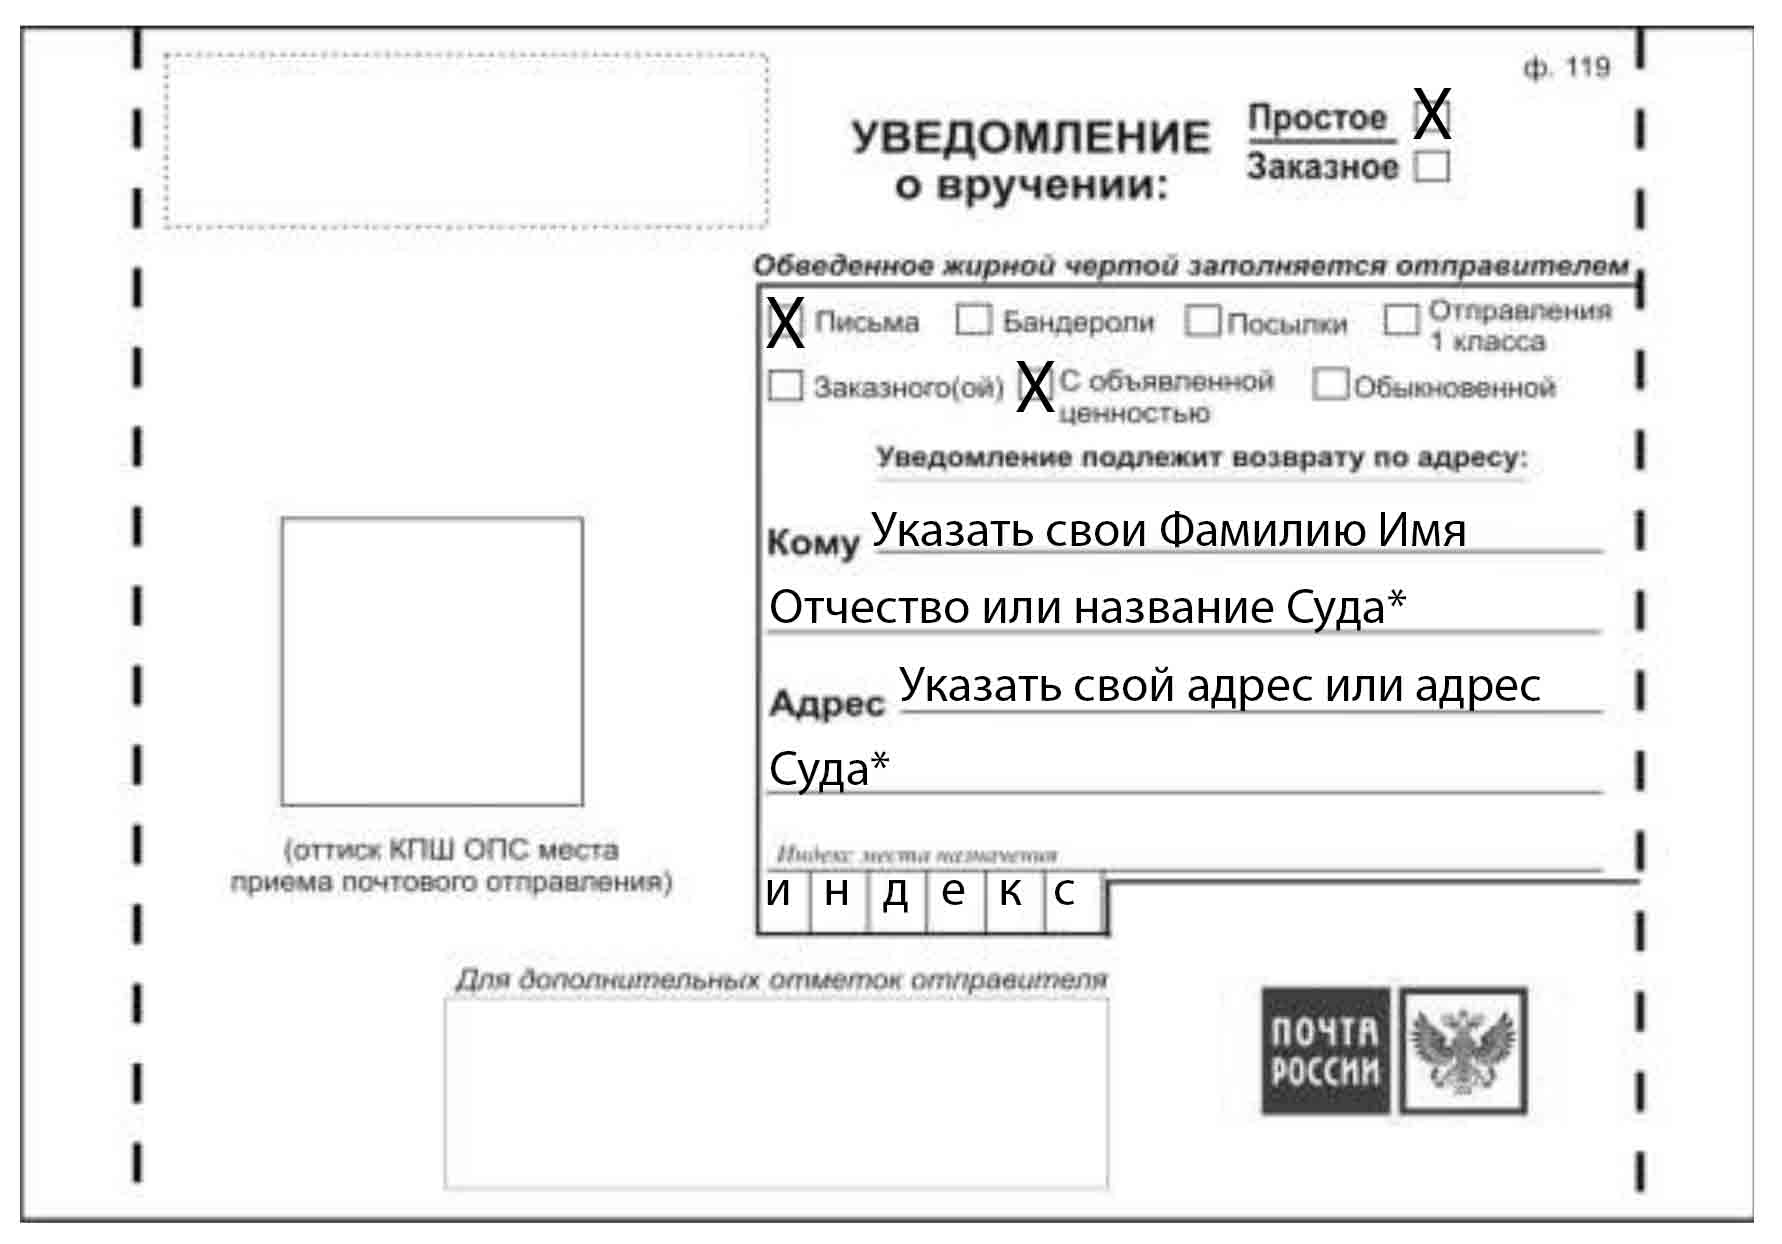 Бланк формы 119 почты россии. Как заполняется уведомление о вручении. Уведомление о вручении ф 119 как заполнить правильно. Как правильно заполняется уведомление о вручении образец заполнения. Образец заполнения уведомления о вручении письма.